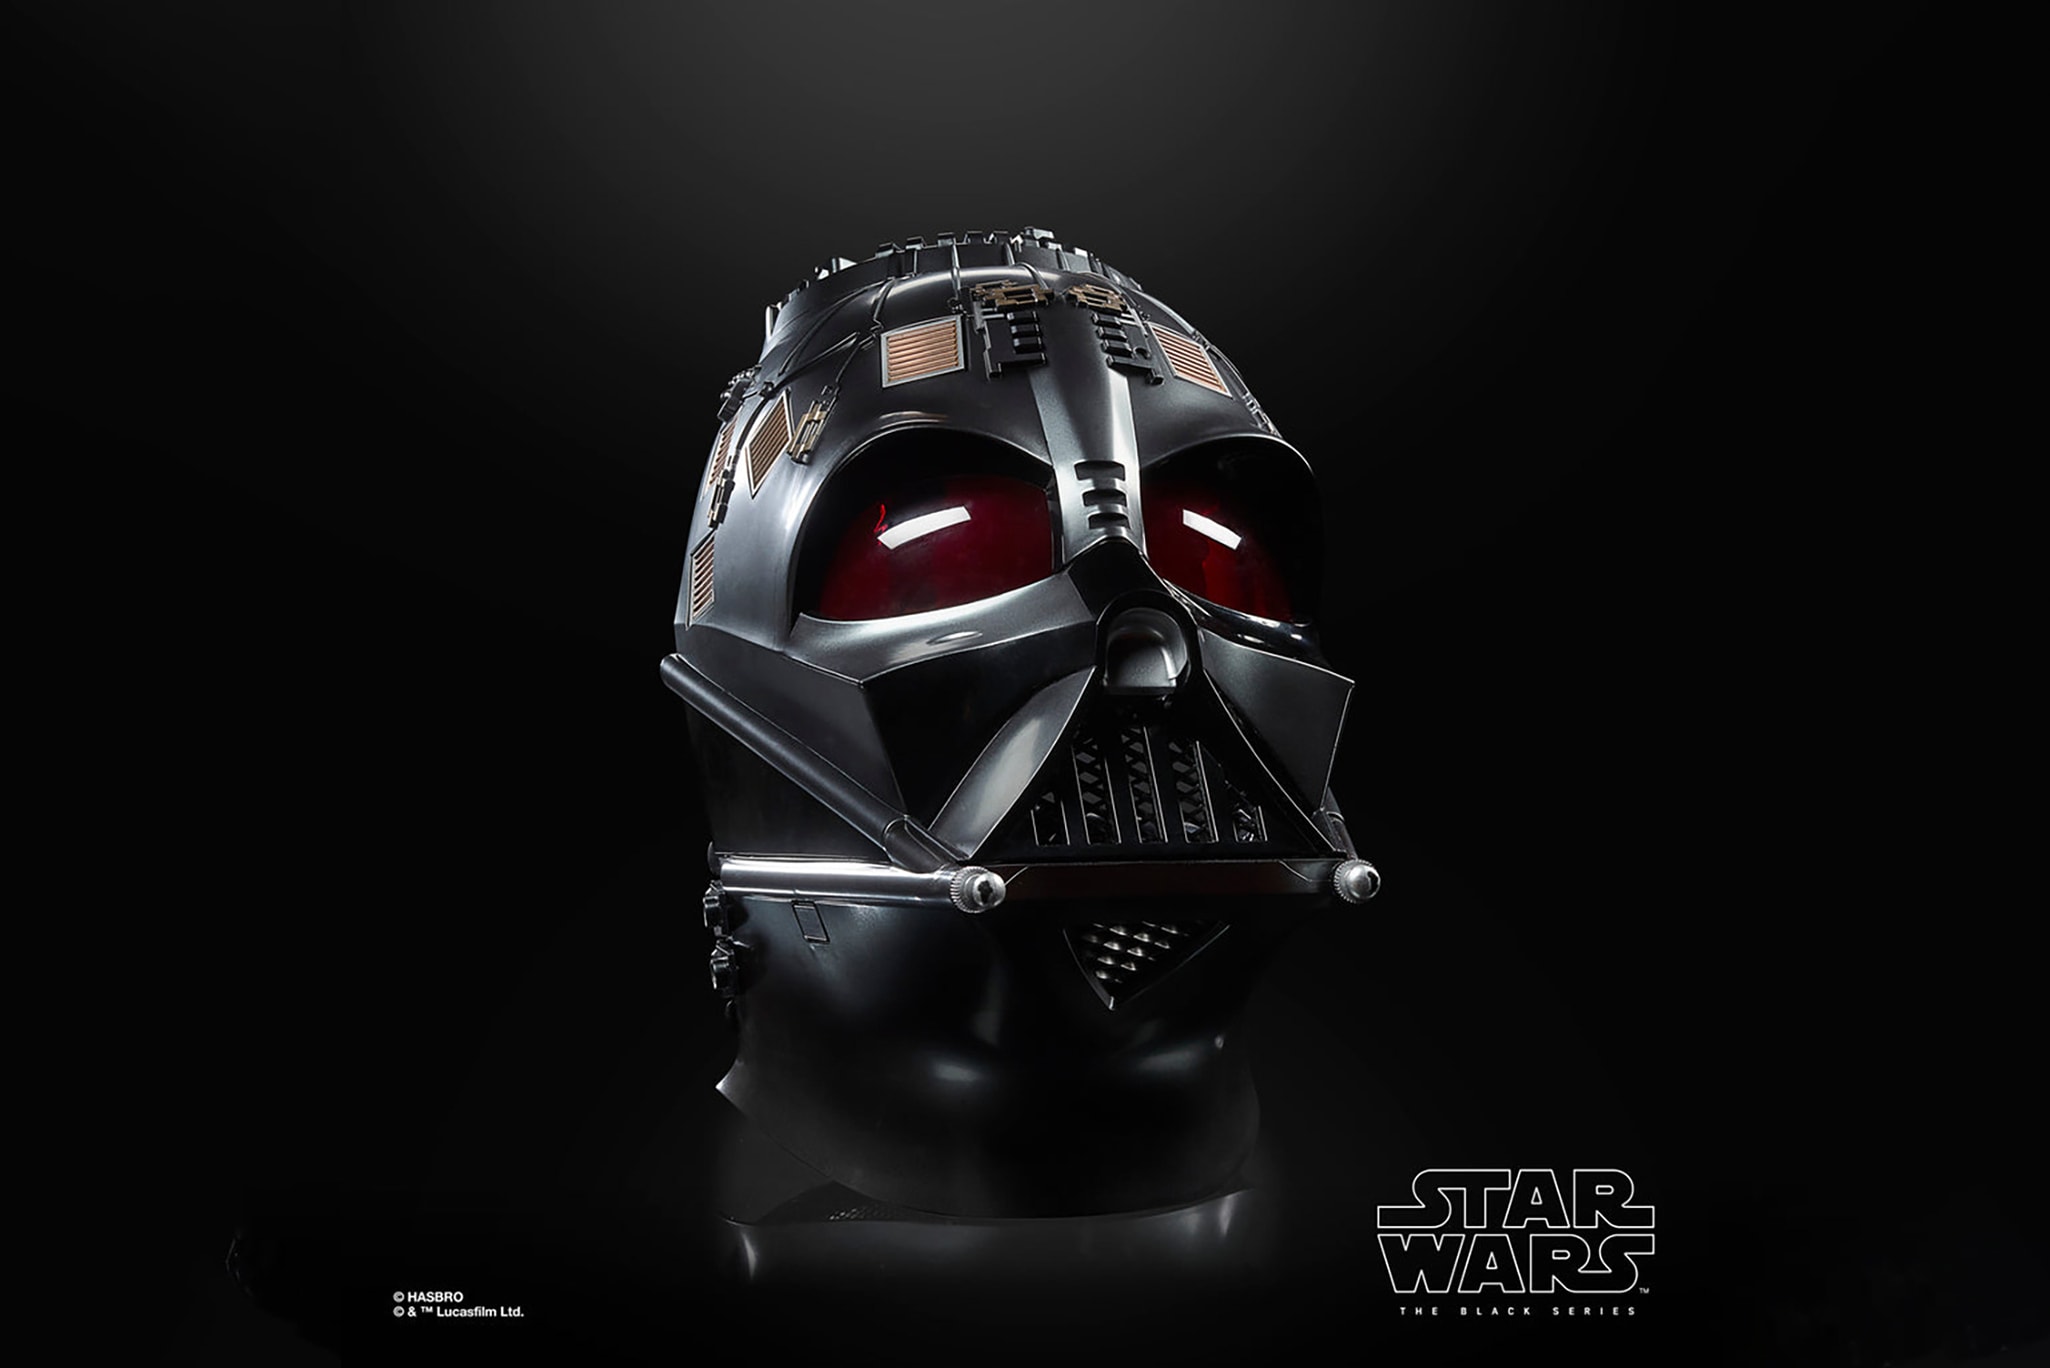 『スター・ウォーズ』オビ＝ワン・ケノービ使用のライトセーバーのレプリカが日本発売決定 Hot Toys Hasbro star wars Riva Obi-Wan Kenobi Darth Vader Helmet toy replica release 